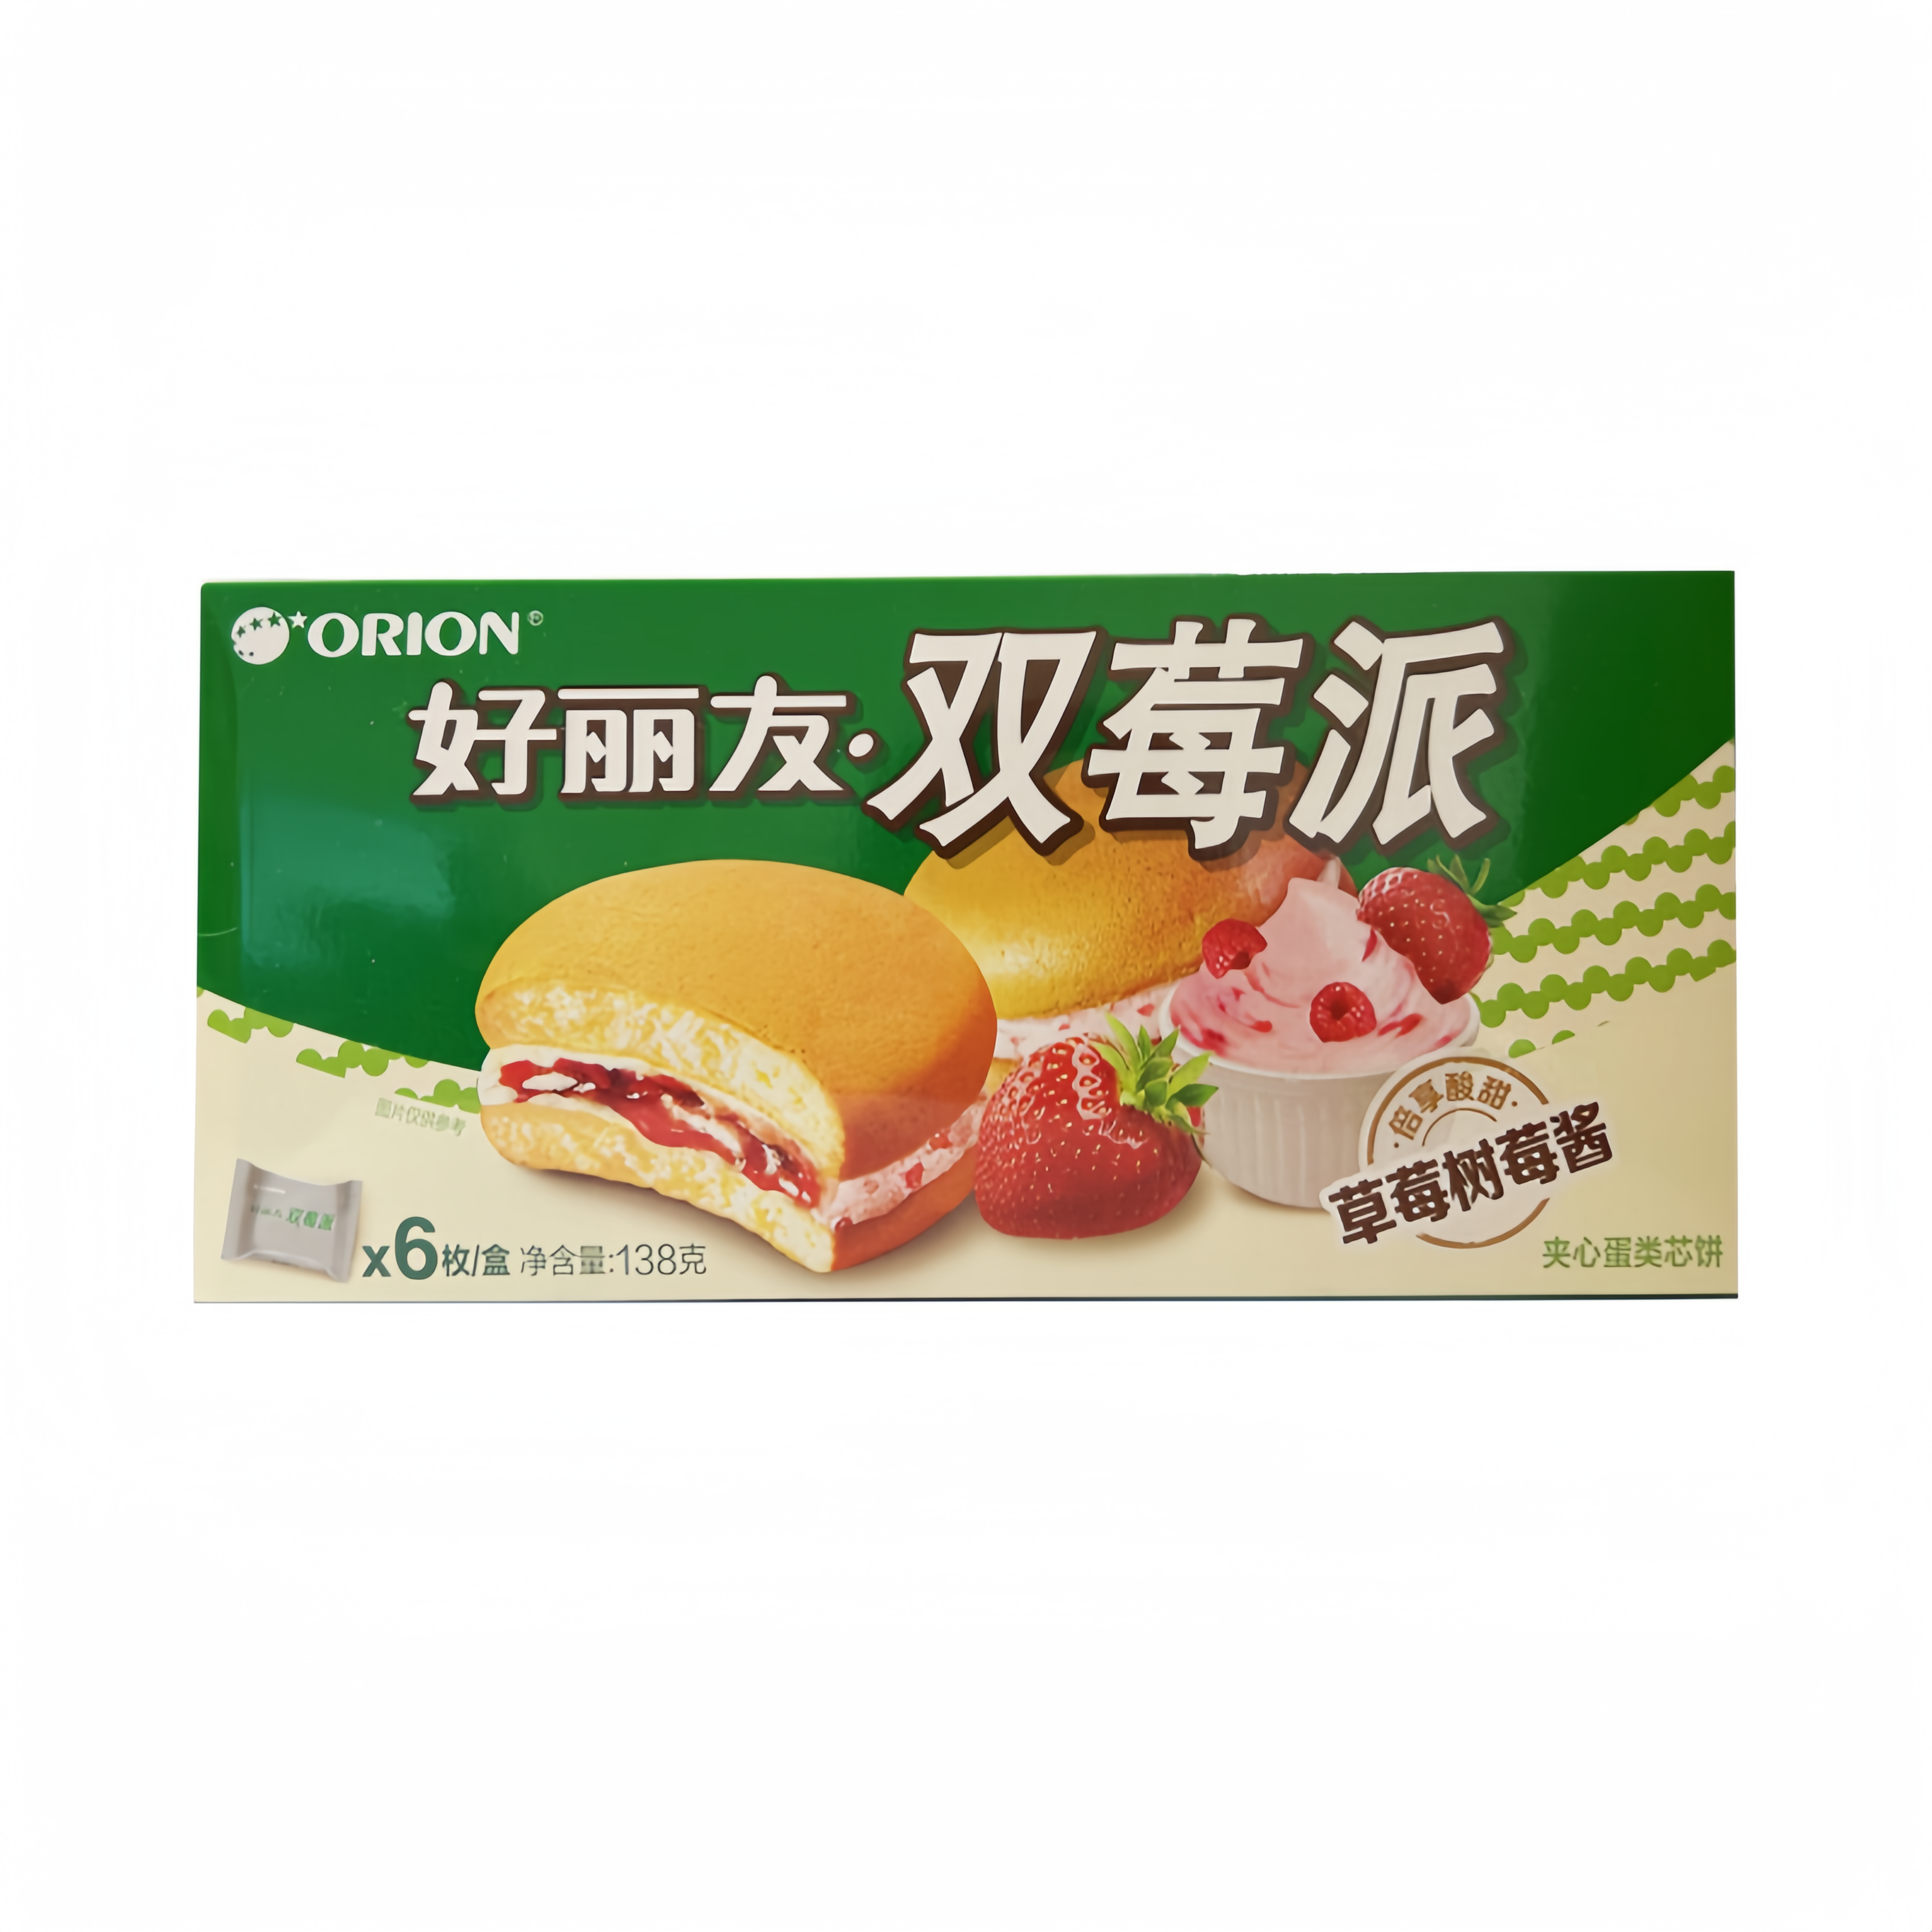 好丽友 双莓派 138g ORION 中国